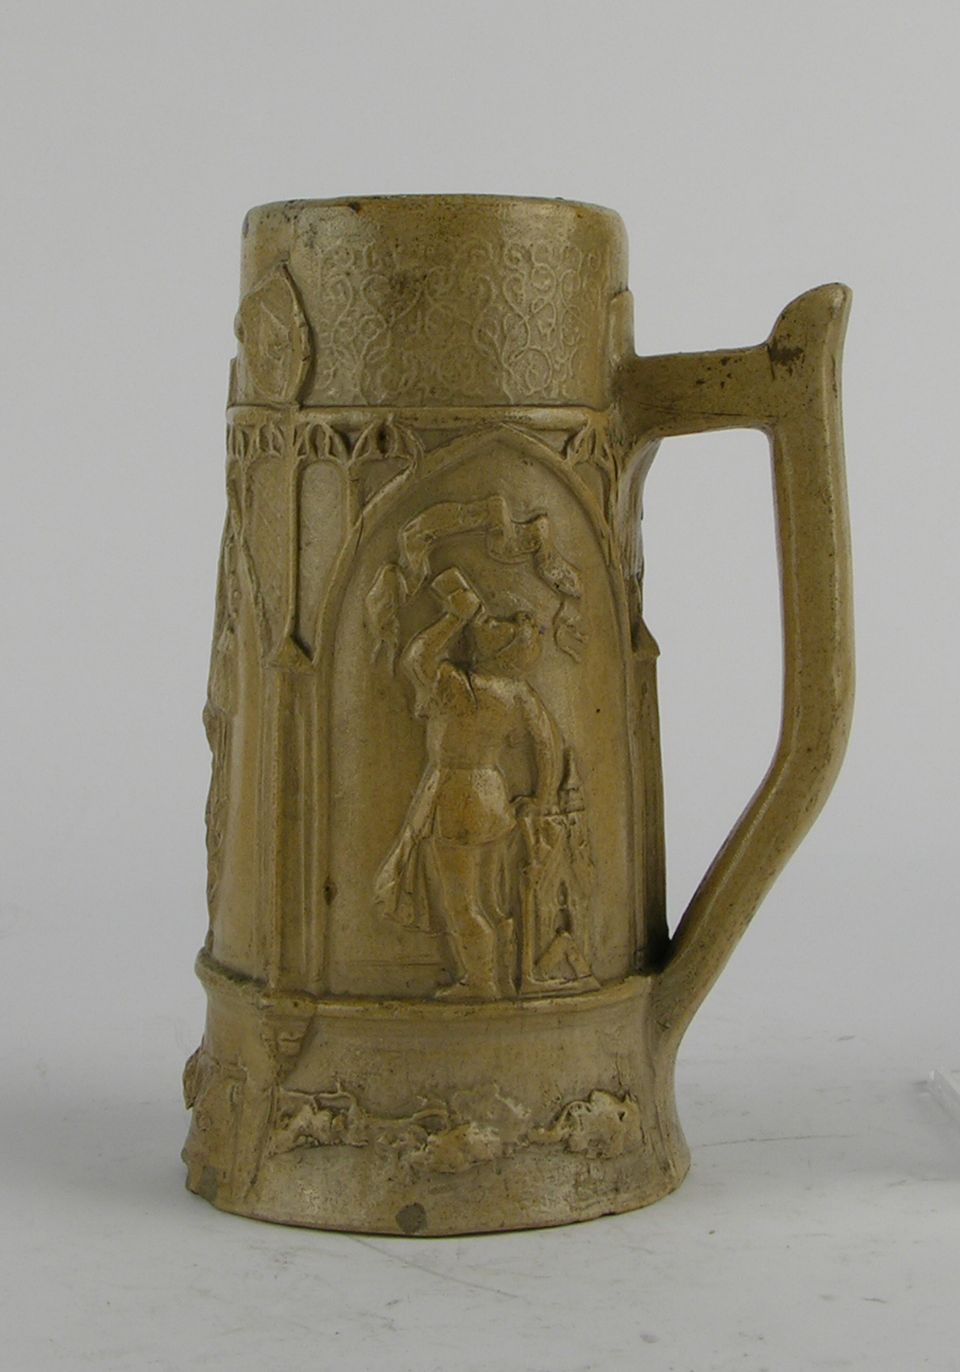 Trinkkrug mit historisierender Darstellung (Historisches Museum der Pfalz, Speyer CC BY)